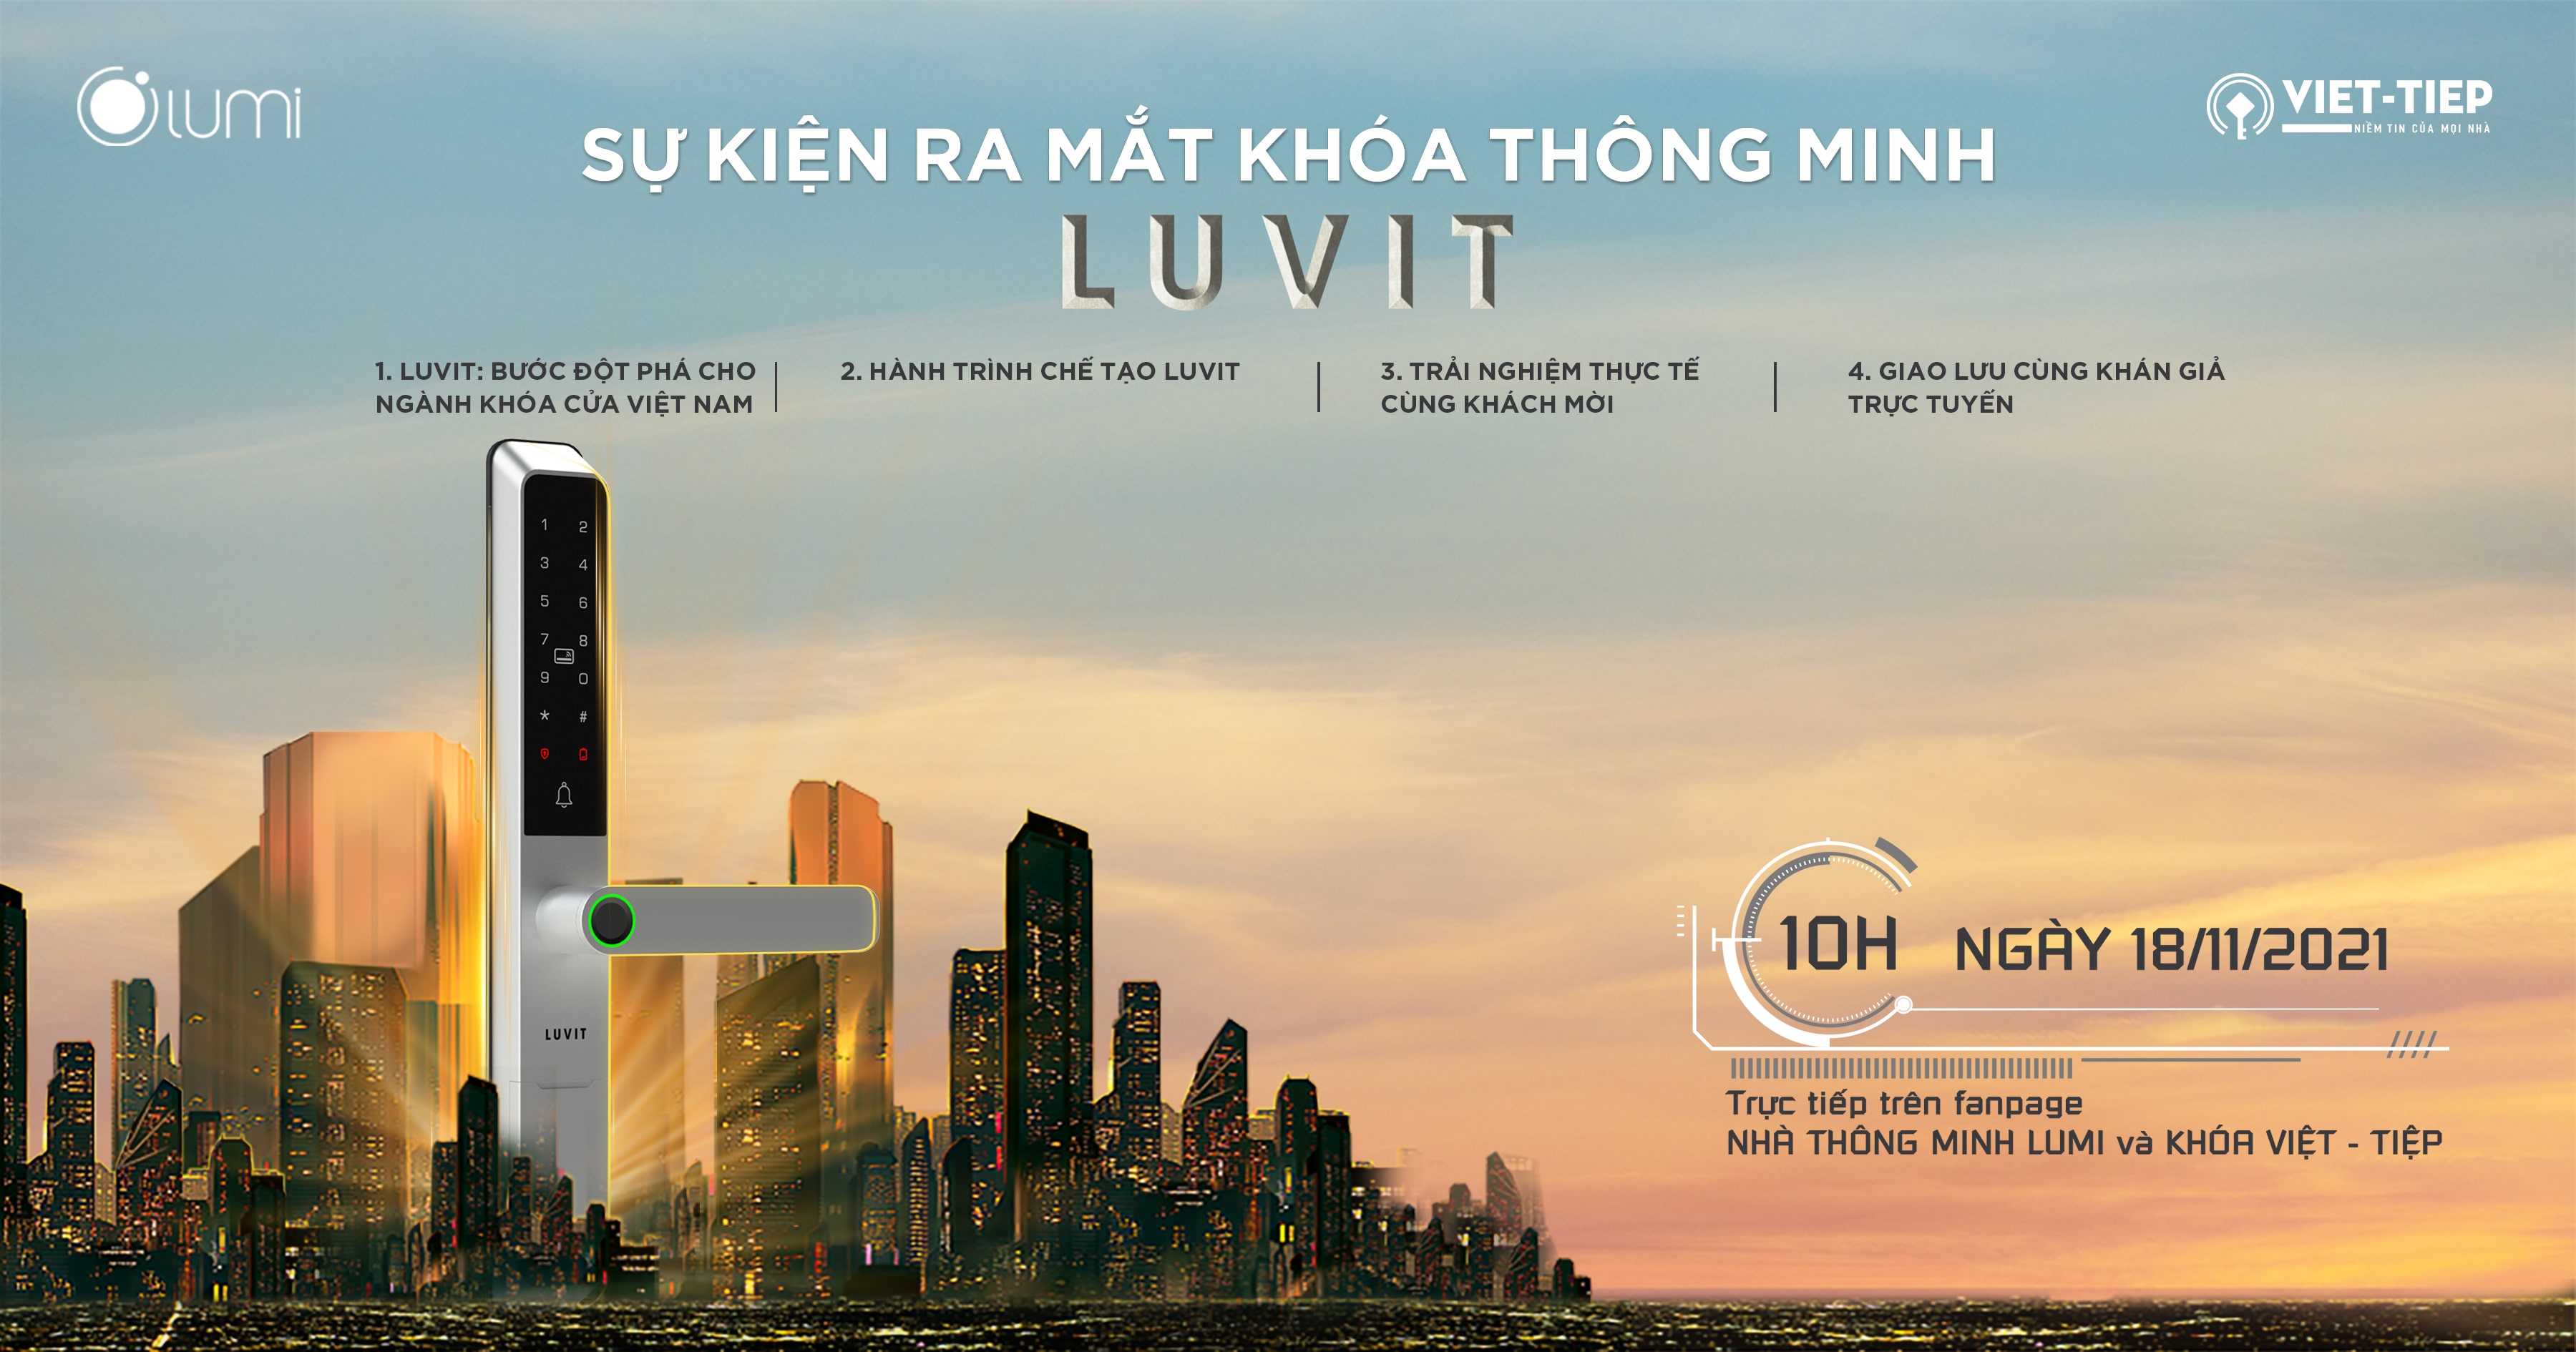 Lumi và Việt Tiệp ra mắt “LUVIT” - Khóa thông minh Make in Vietnam